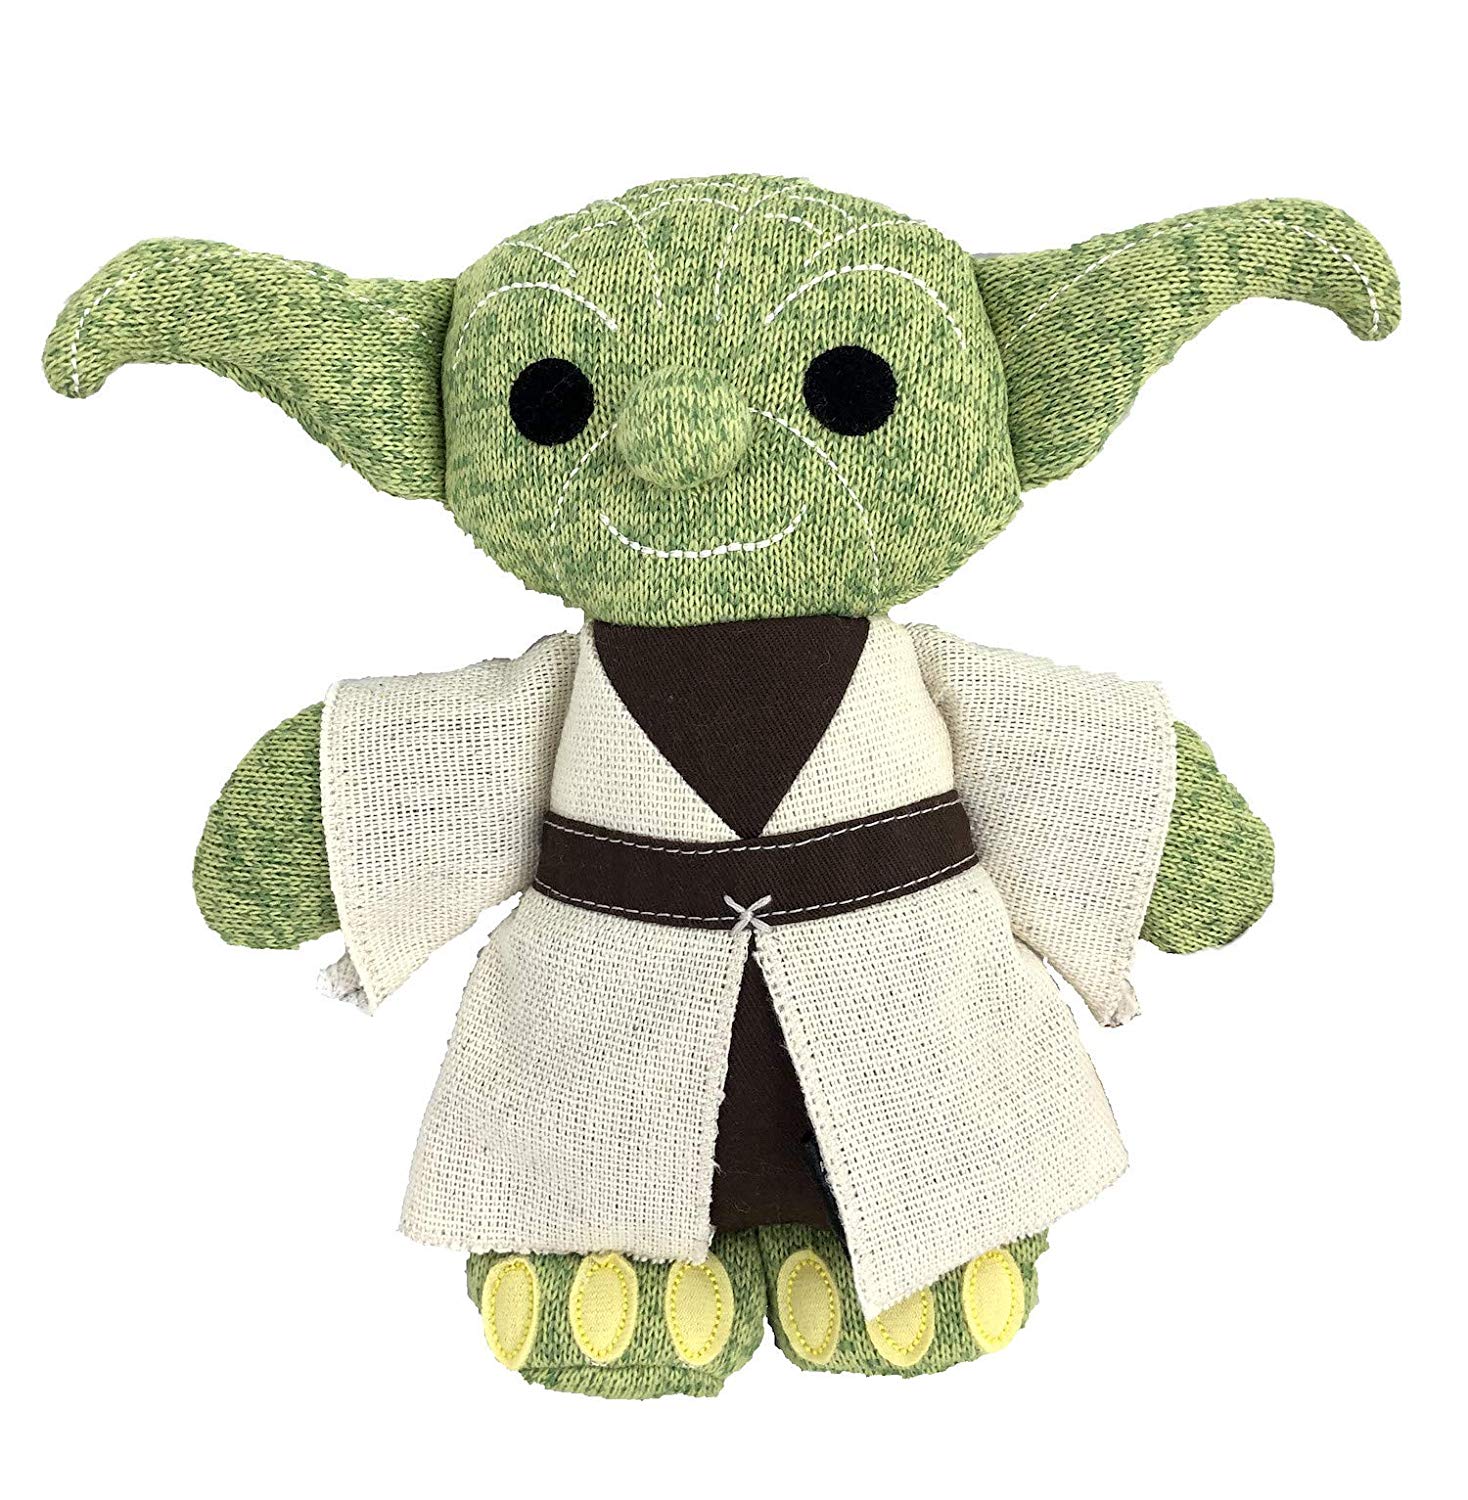 SW GE Yoda Plush Figure